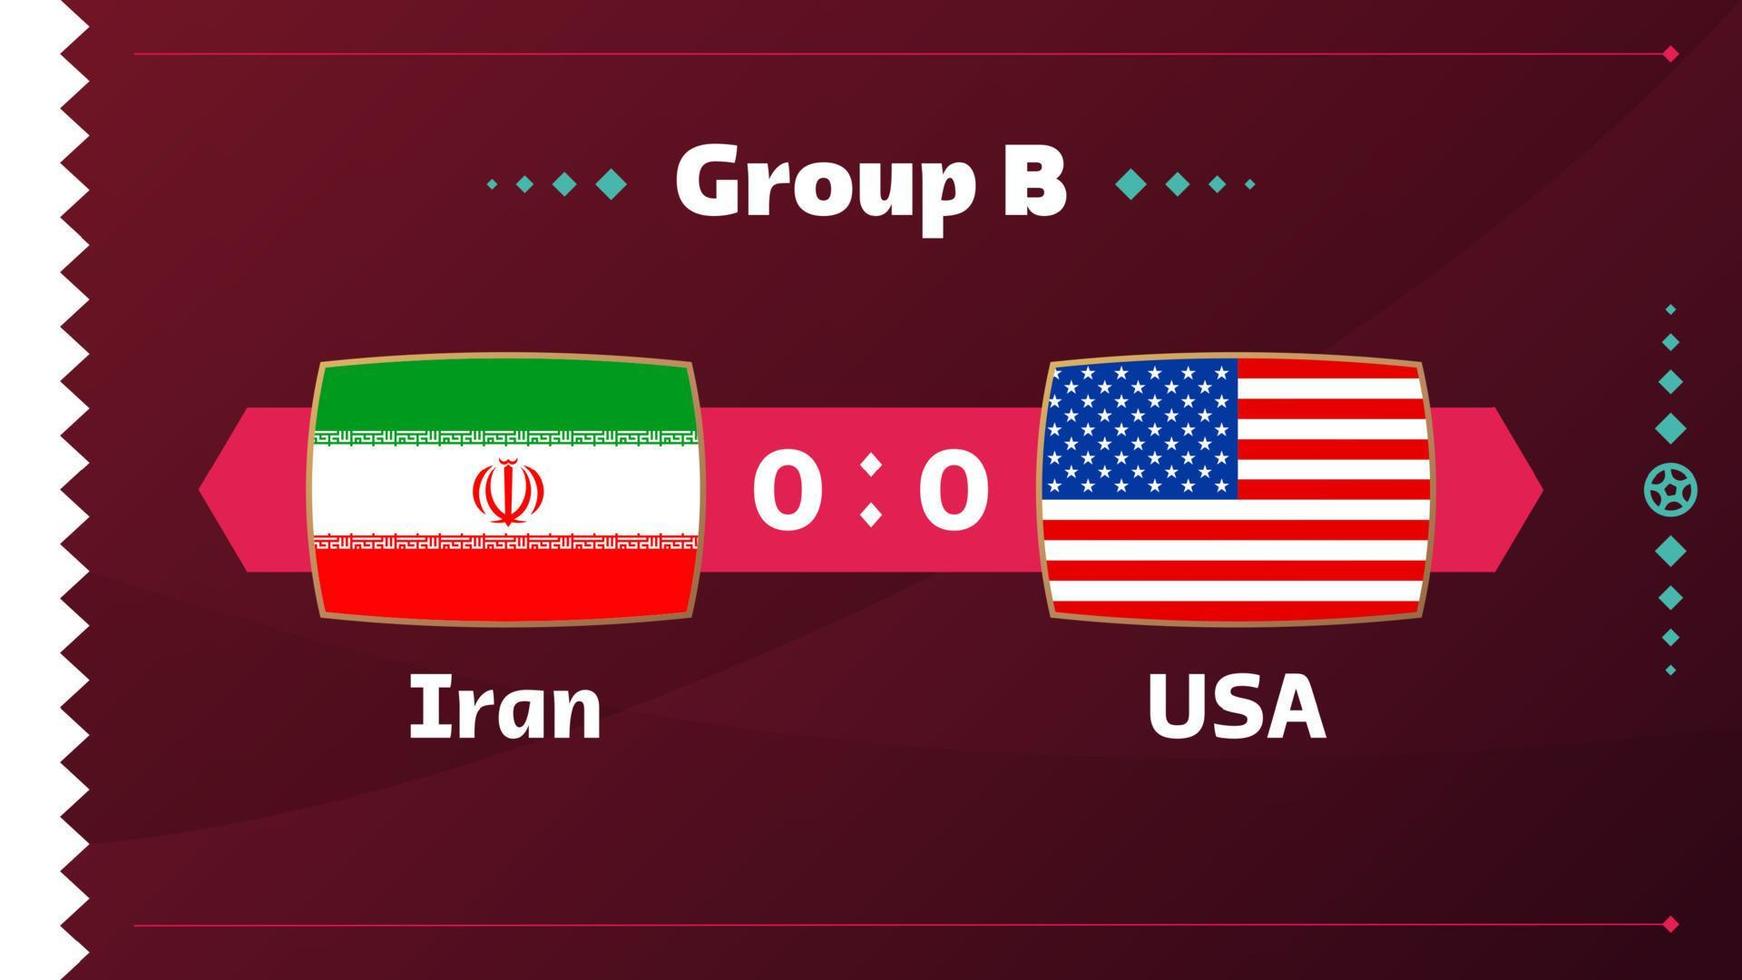 iran vs usa, futbol 2022, grupo b. partido de campeonato mundial de fútbol versus antecedentes deportivos de introducción de equipos, afiche final de la competencia de campeonato, ilustración vectorial. vector